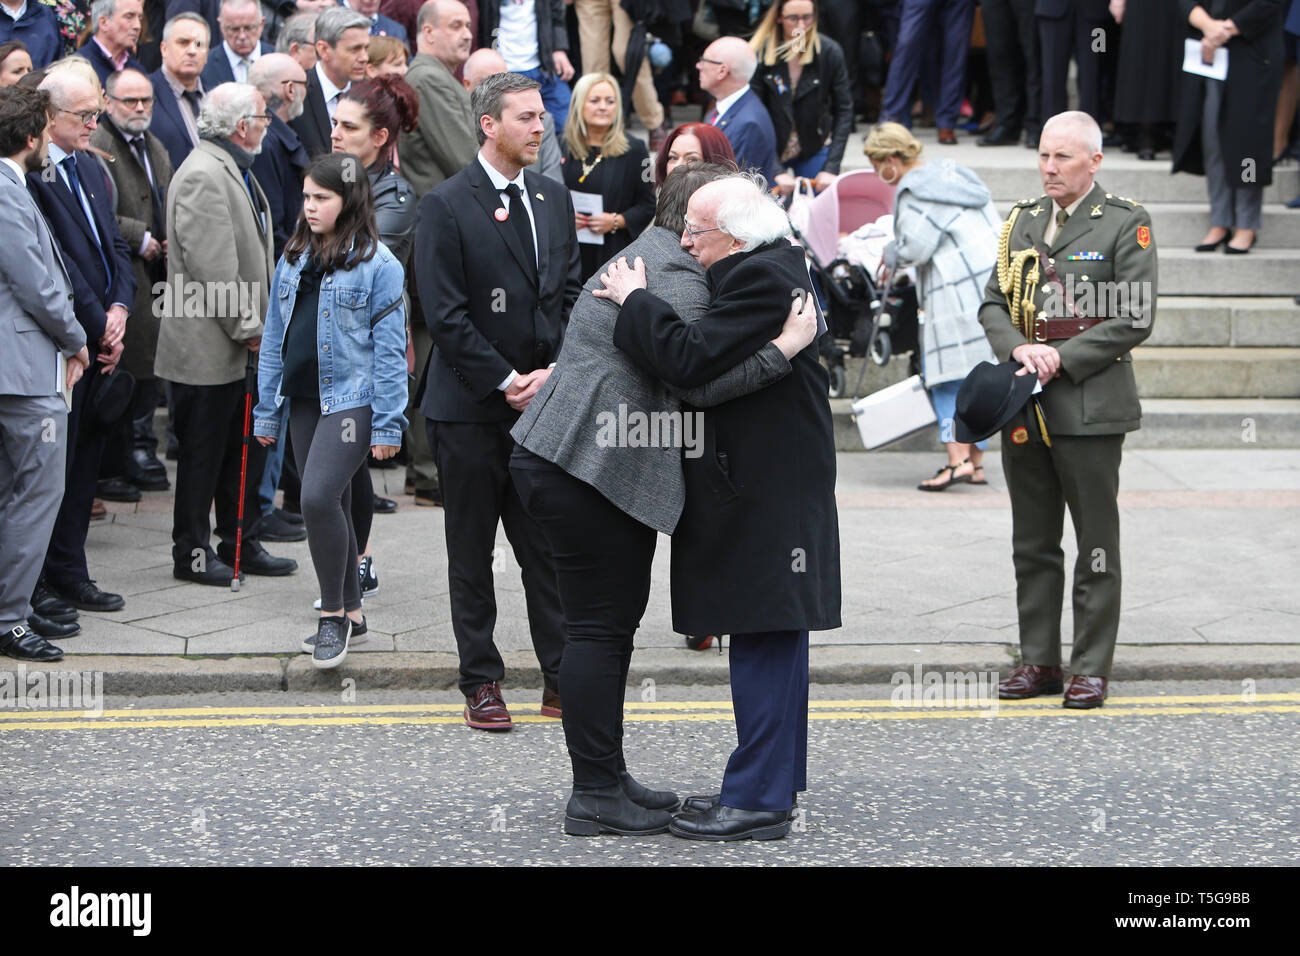 Belfast, County Antrim, Irlanda del Nord, 24 Aprile 2019 - Presidente irlandese Michael D. Higgins abbracci Sara Canning, partner di Ms Lyra McKee, dopo Ms McKee i funerali presso il St Anne's Cathedral, Donegall Street, Belfast. Ms McKee,a giornalisti, 29, è stato girato in testa il giovedì notte osservando disordini a Londonderry Creggan dell'estate. La nuova IRA ha ammesso la responsabilità per l'assassinio del giornalista Lyra McKee. Paolo McErlane/Alamy Live News Foto Stock